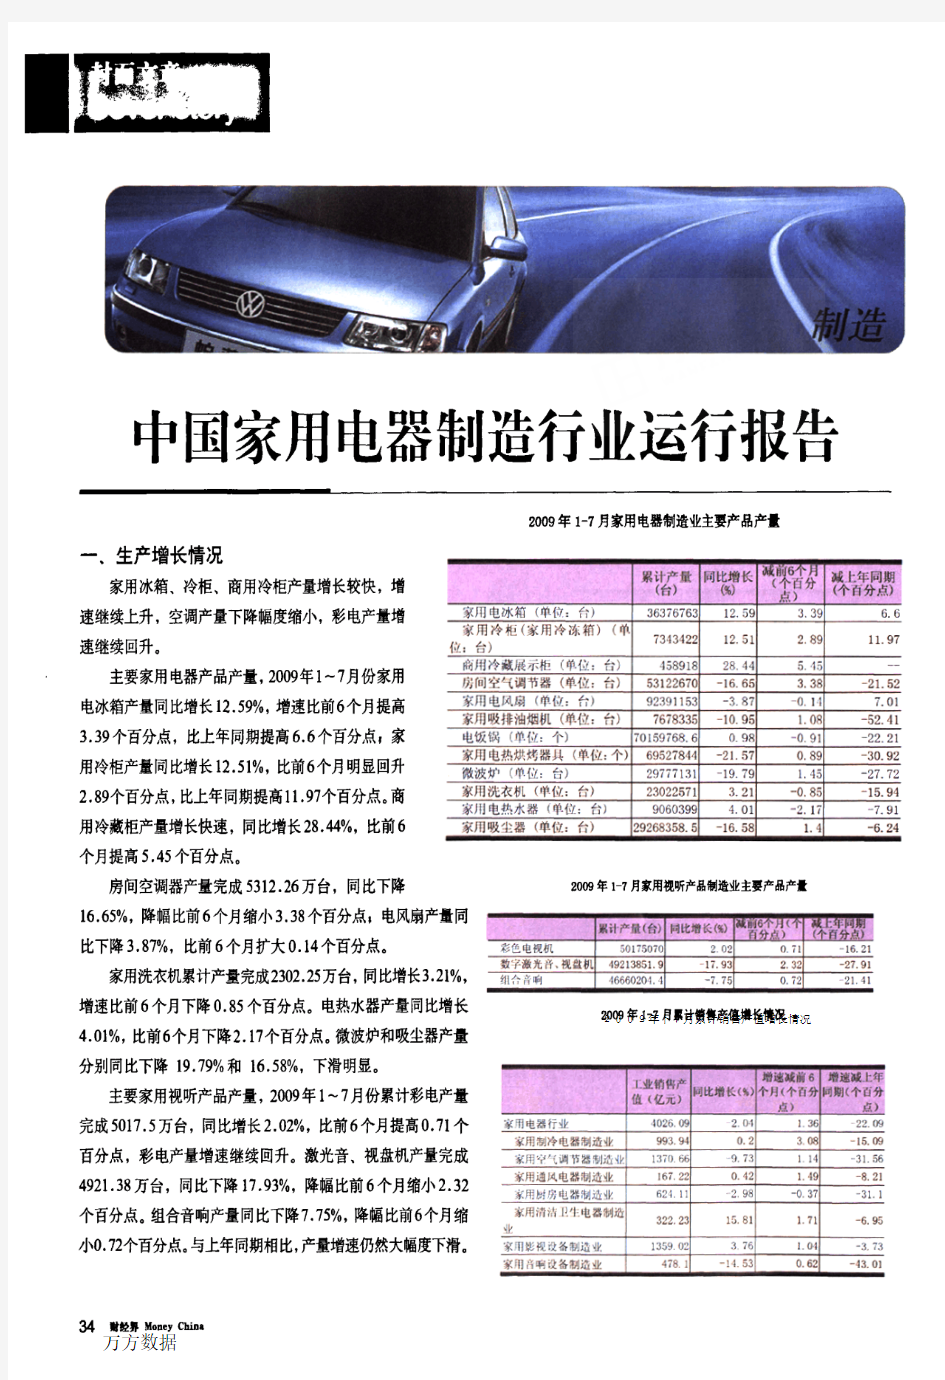 中国家用电器制造行业运行报告2010